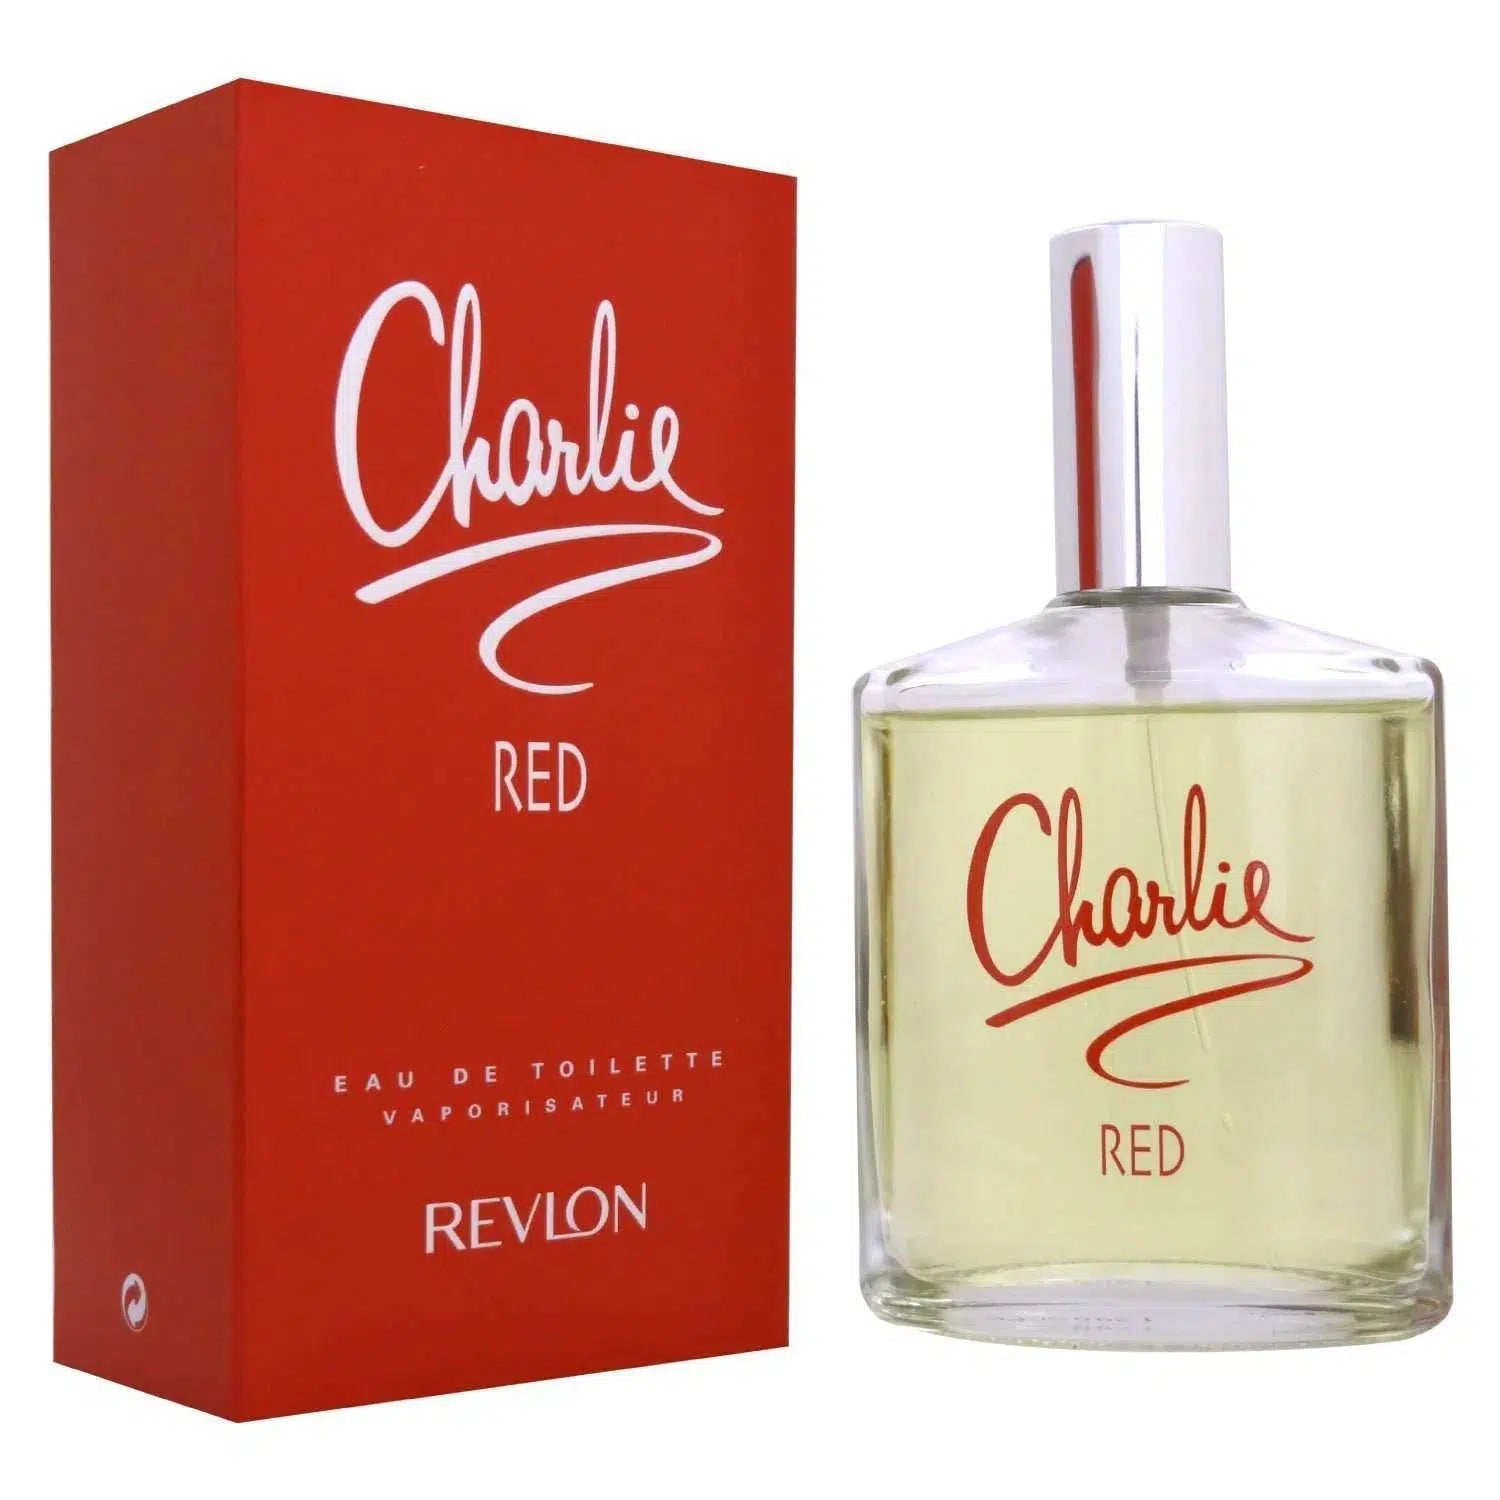 Revlon Charlie RED EDT for Women 100ml - Perfume Philippines